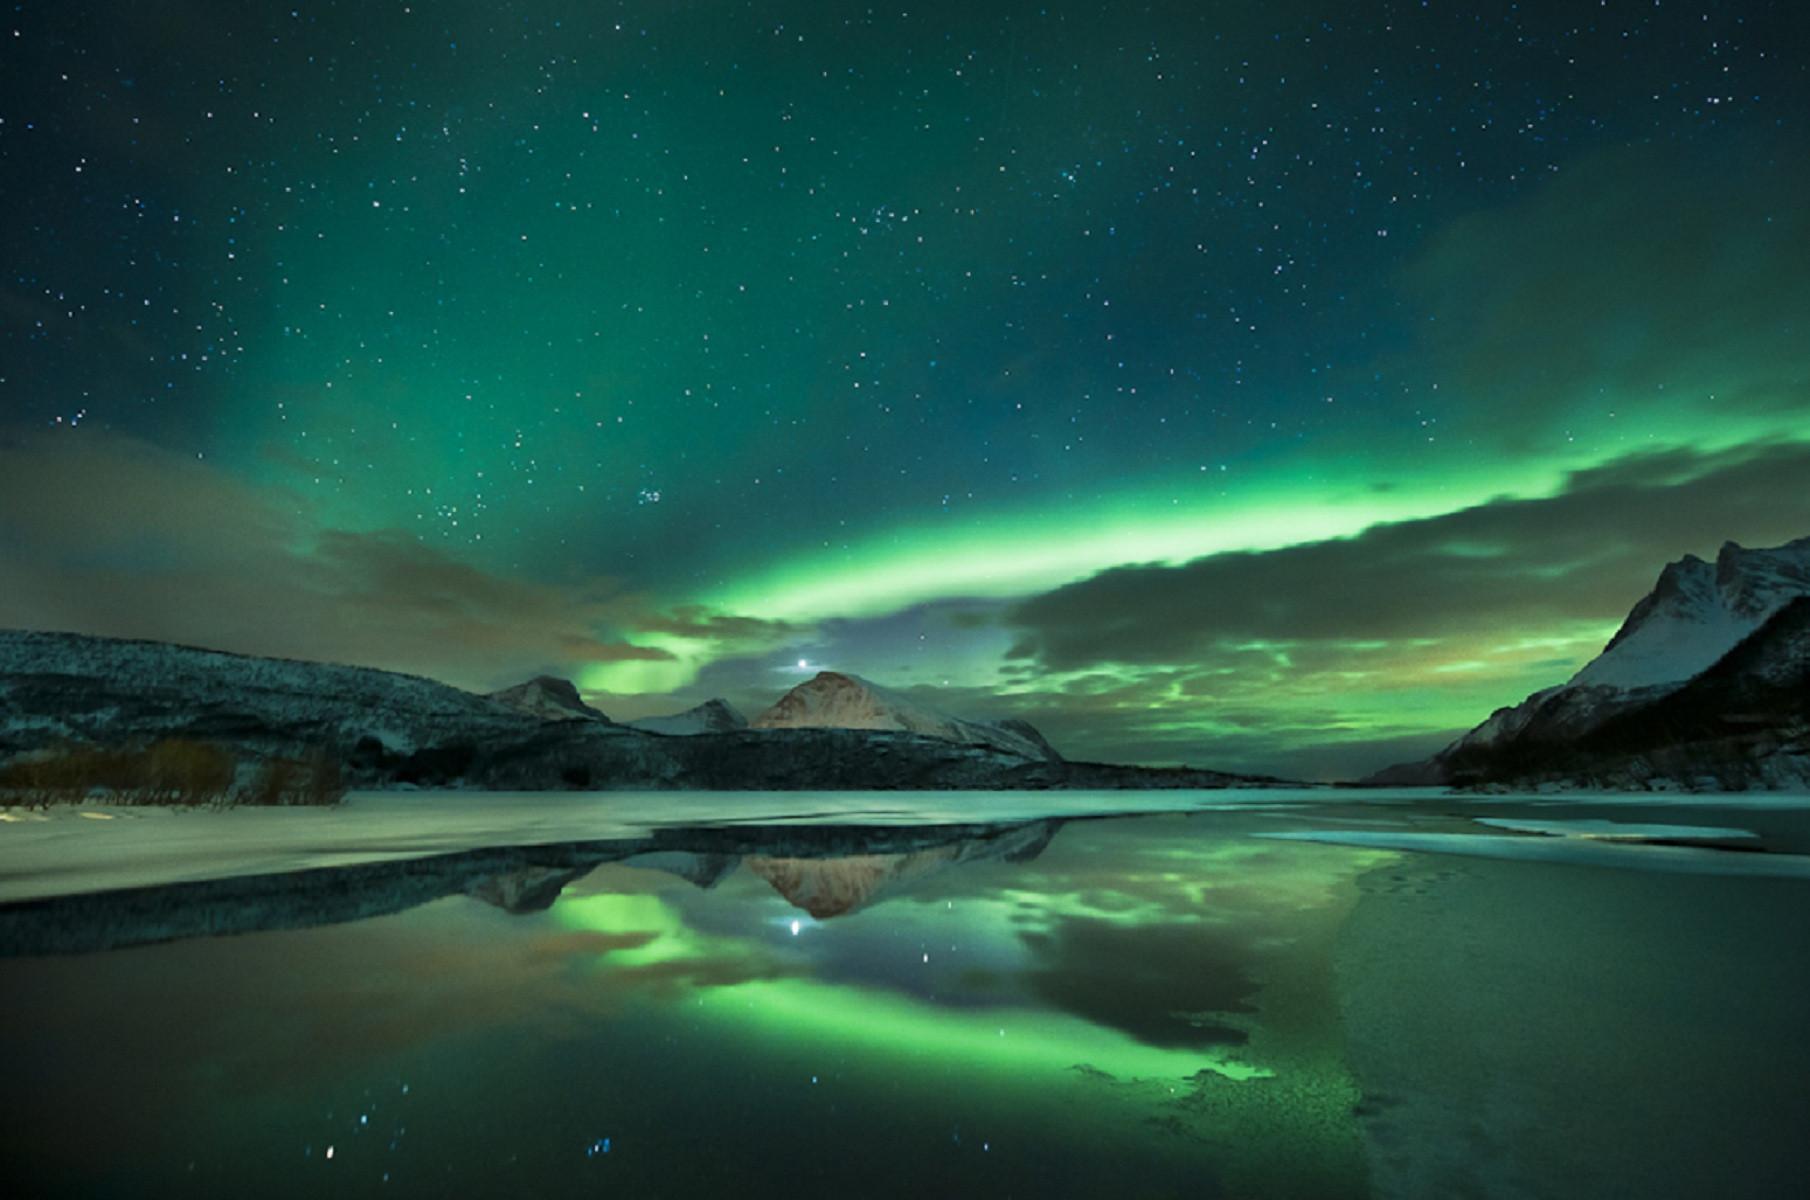 Aurora Borealis i Rana, Norway [1810x1200]